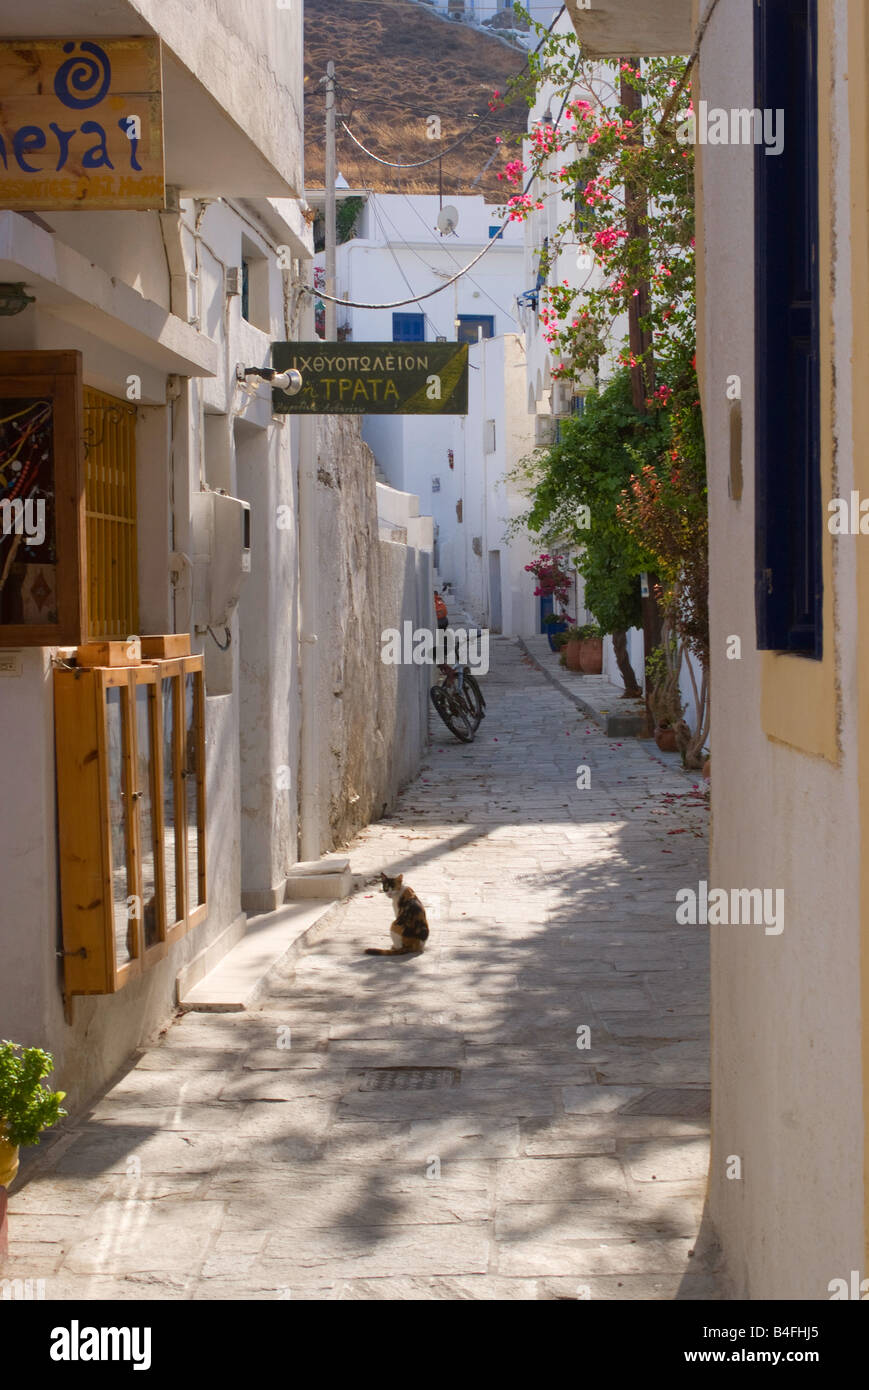 Chat assis dans une ruelle grecque jouissant du soleil pour l'île de Serifos Livadi Ville Îles Cyclades Grèce mer Egéé Banque D'Images